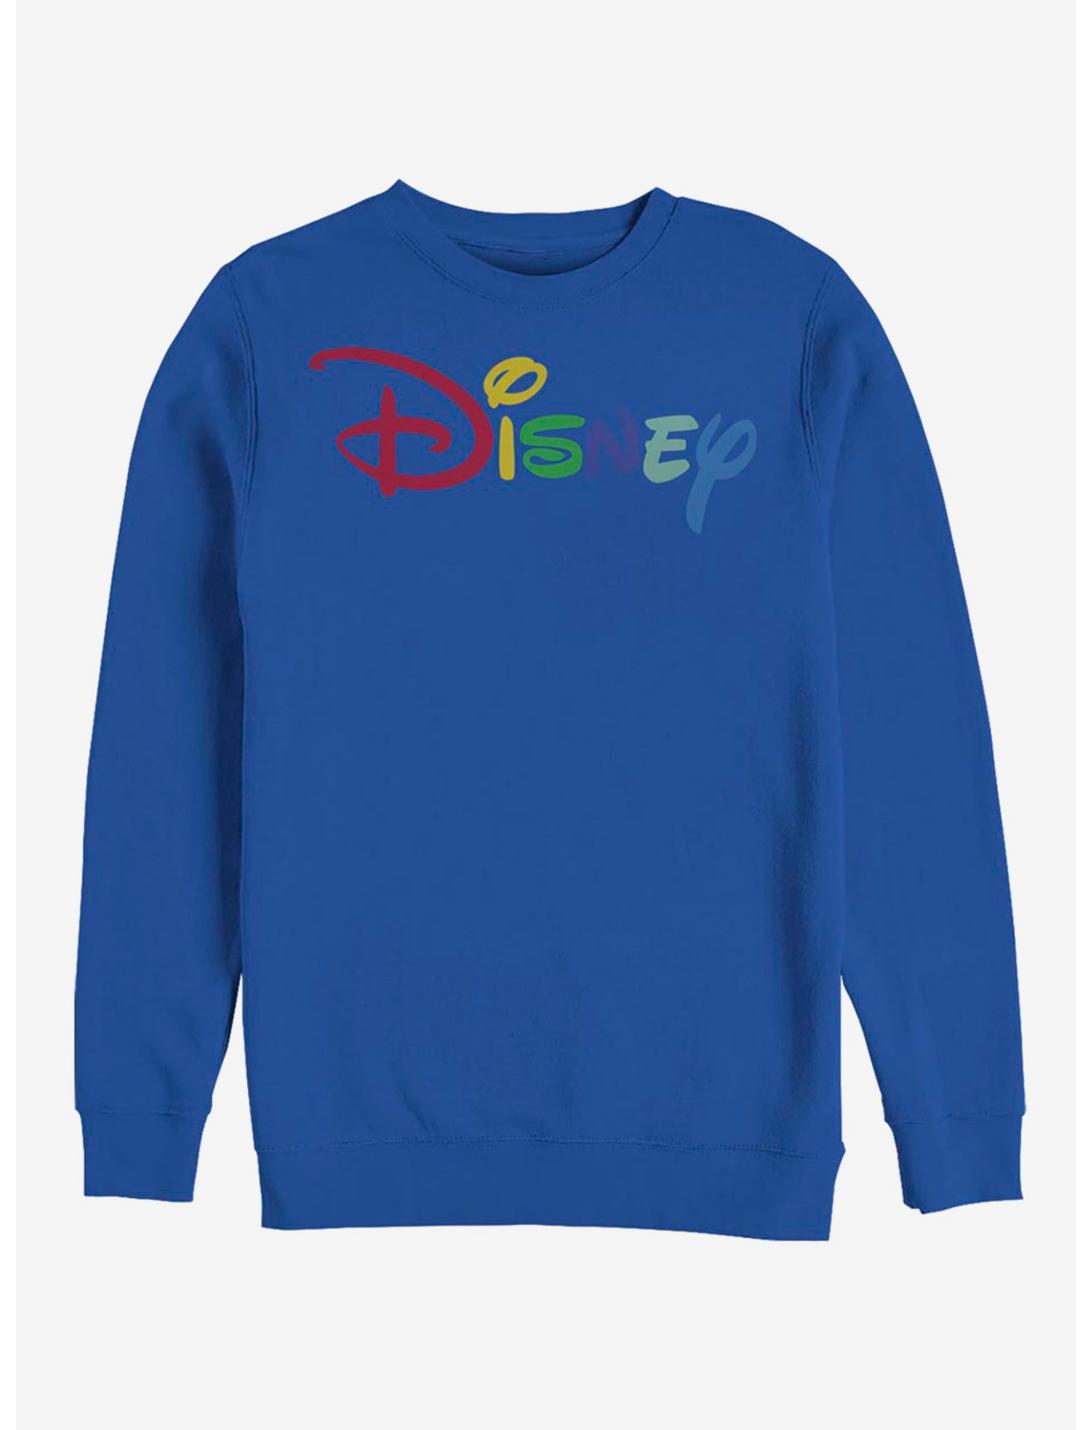 Disney Classic Multicolor Disney Logo Crew Sweatshirt, ROYAL, hi-res